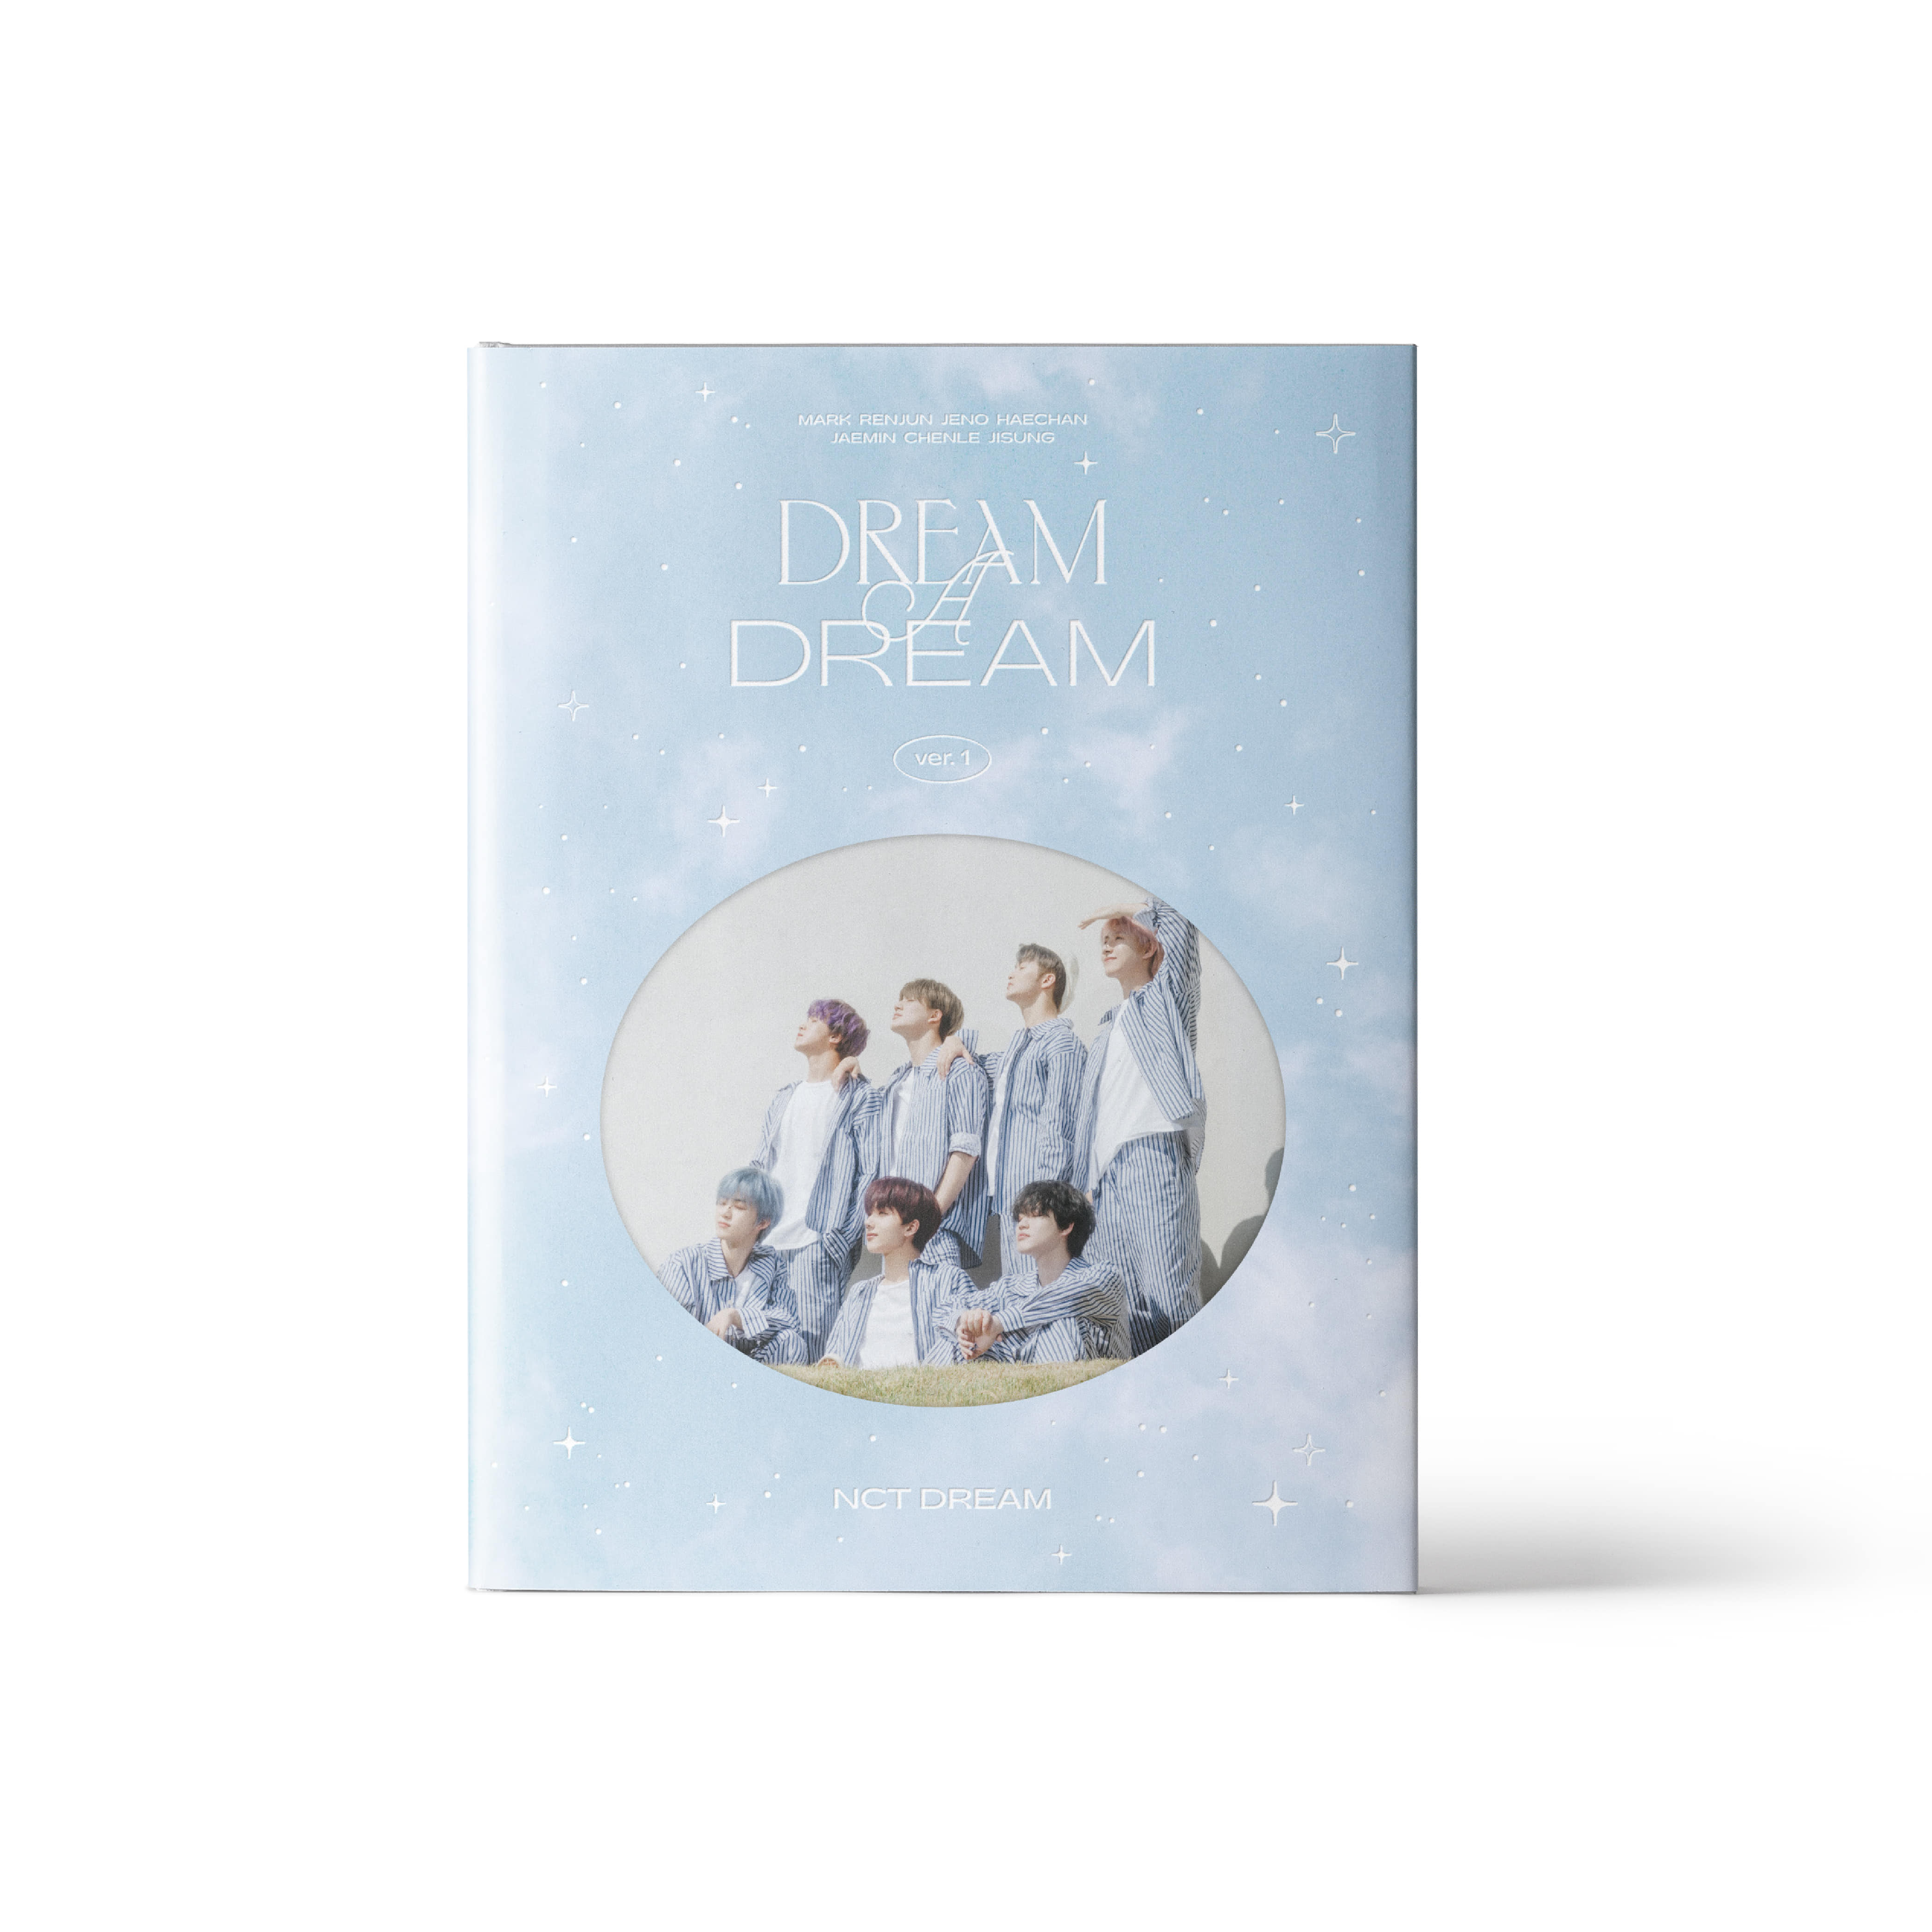 [PRE-ORDER] NCT DREAM - NCT DREAM PHOTO BOOK [DREAM A DREAM]케이팝스토어(kpop store)